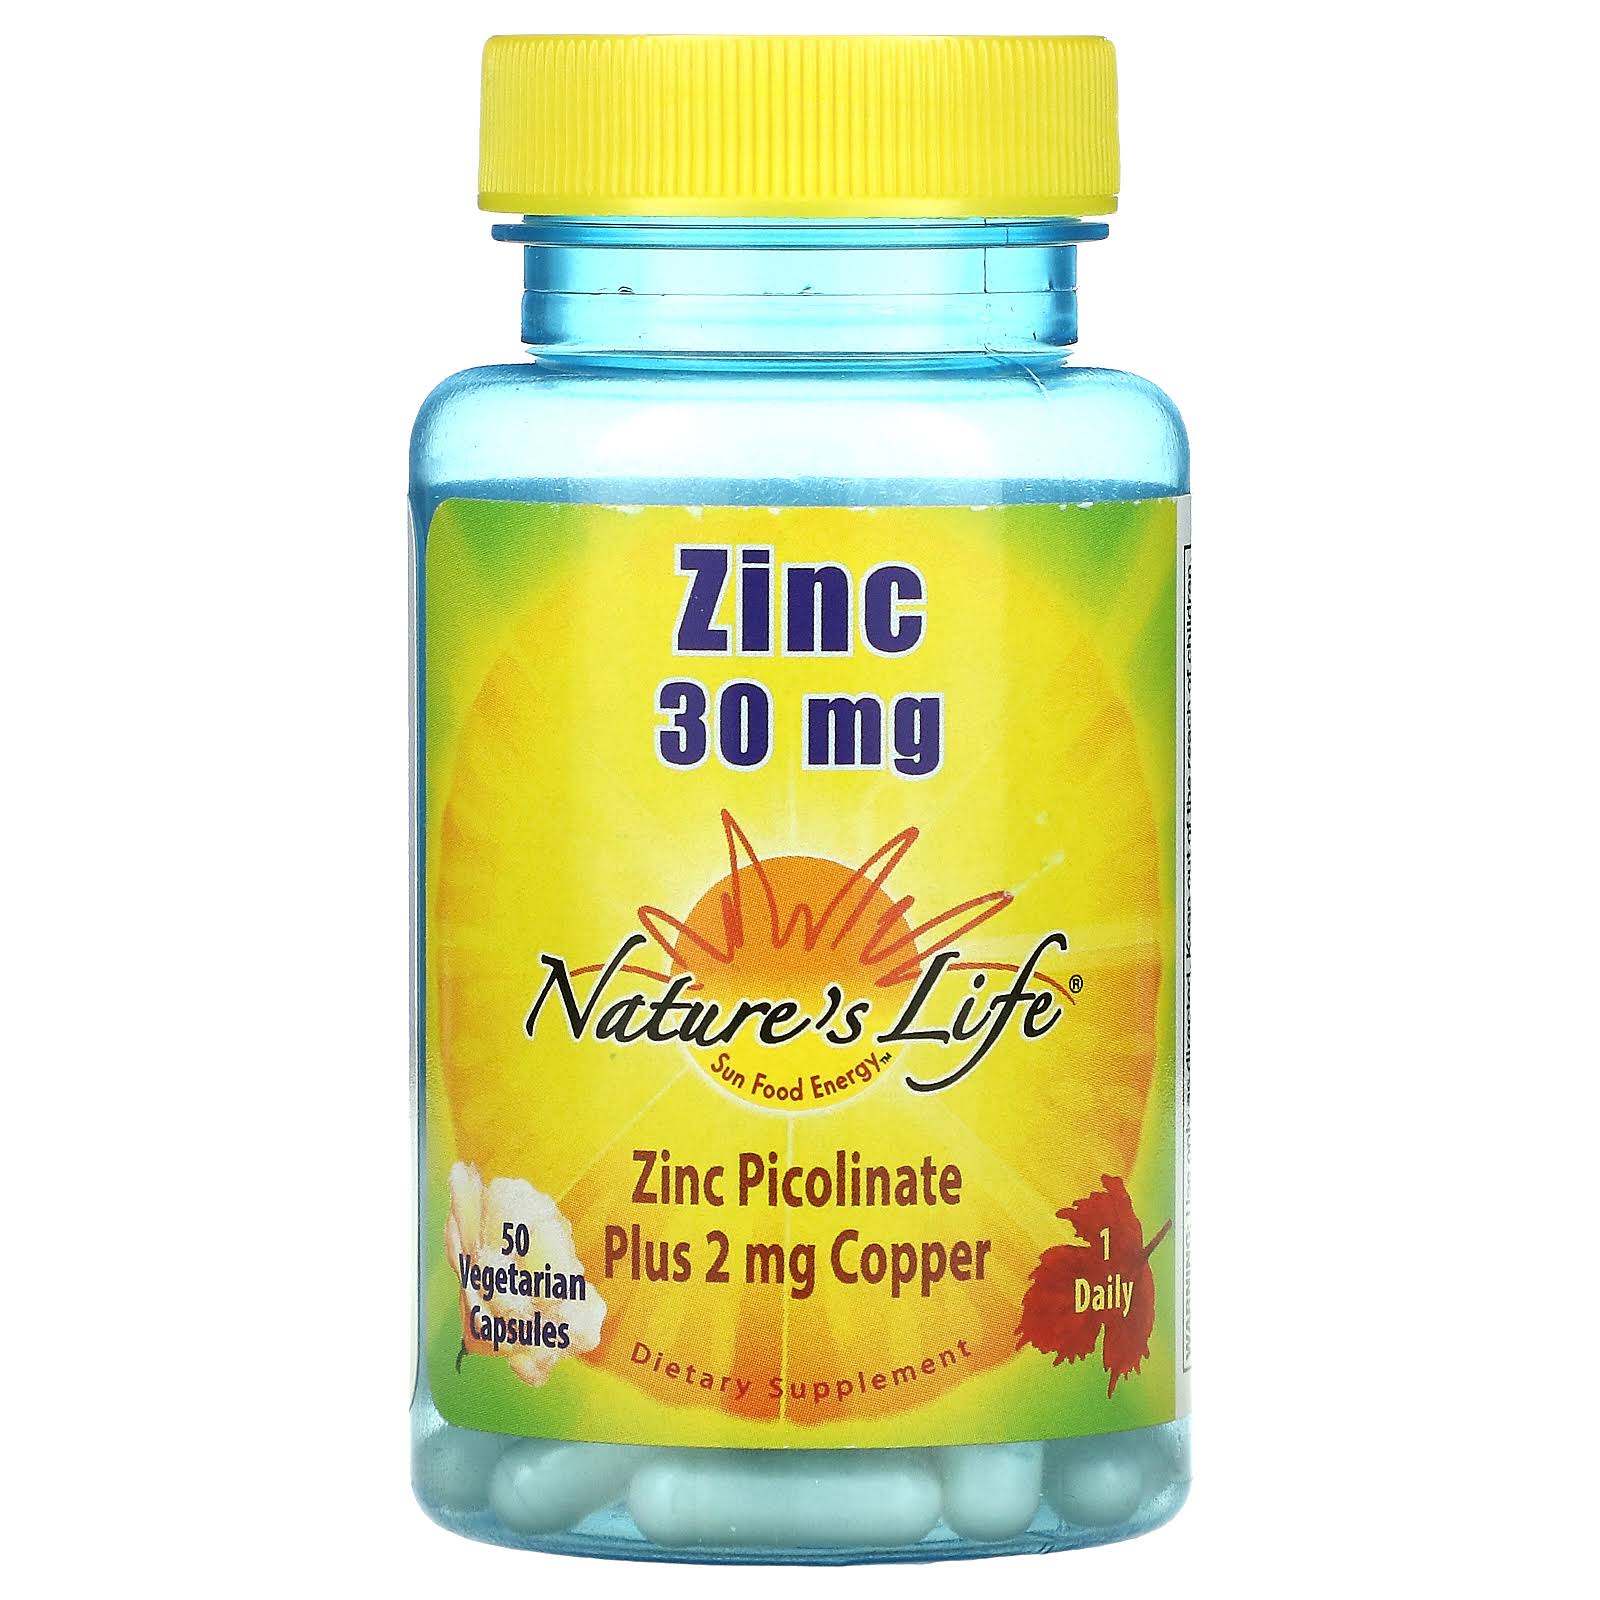 Nature’s Life Zinc Picolinate Plus Copper Supplement - 50 Vegetarian Capsules